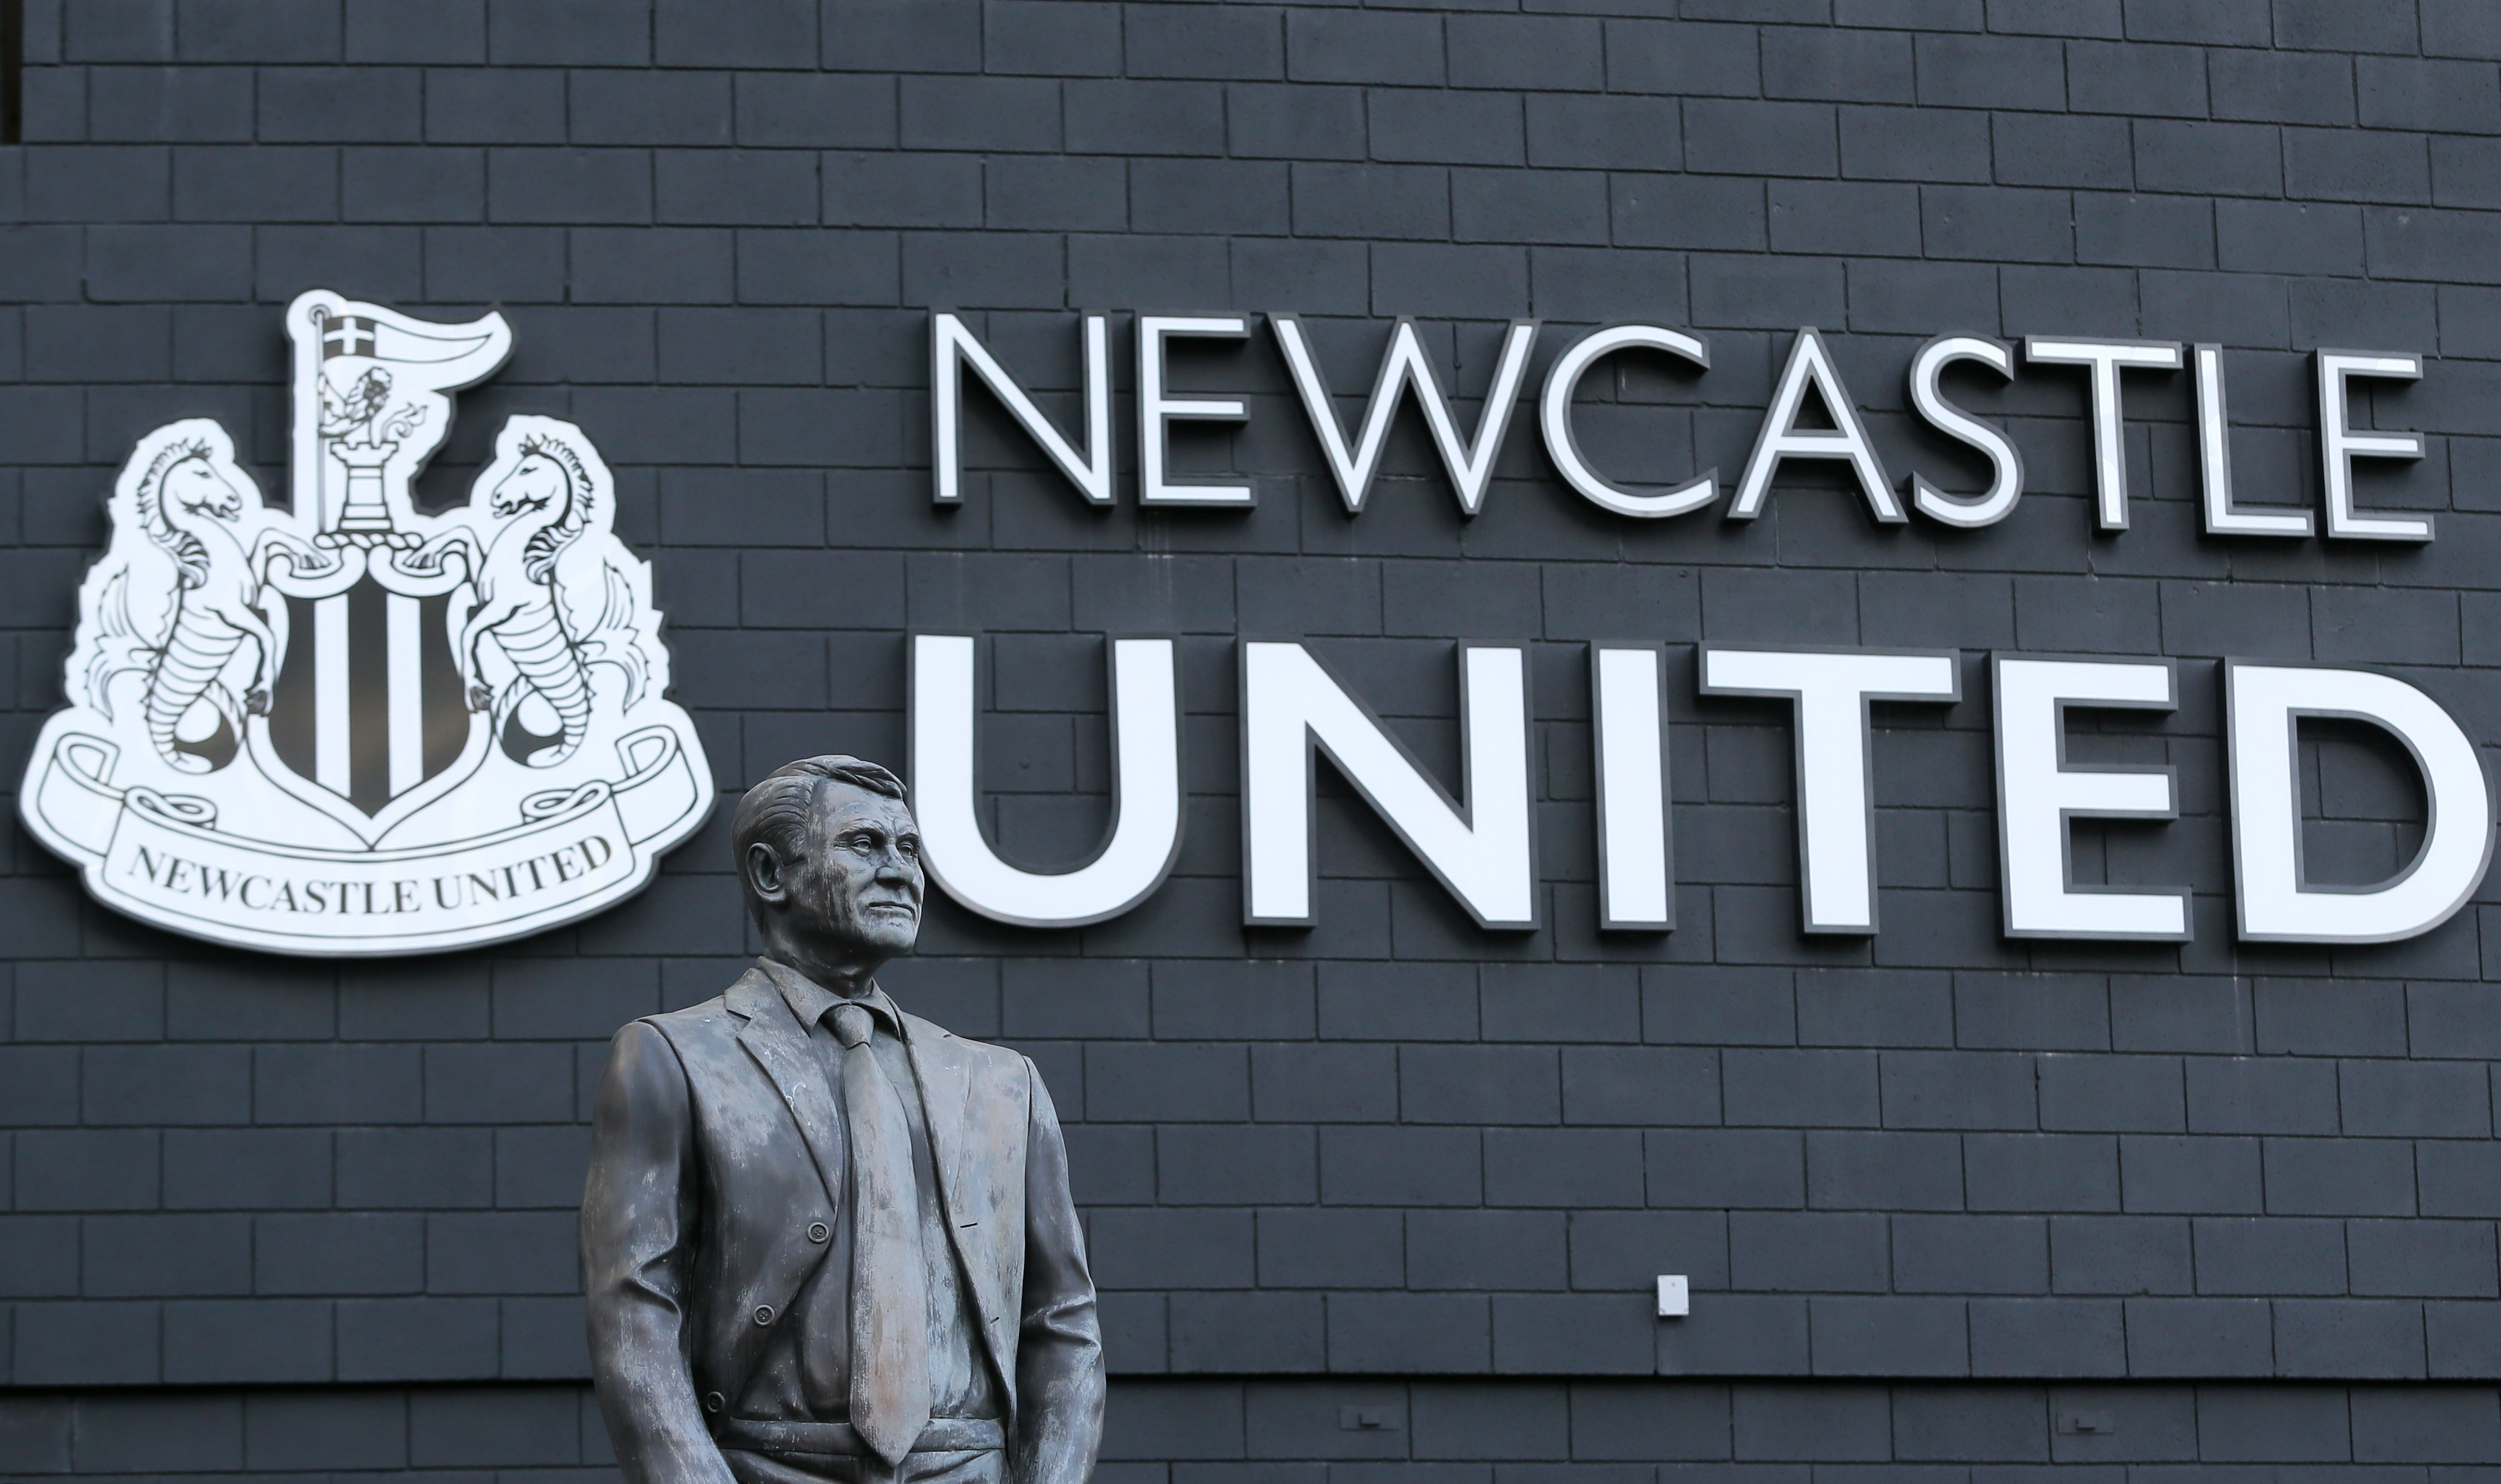 Fundo saudita desiste de comprar o Newcastle e culpa clubes rivais